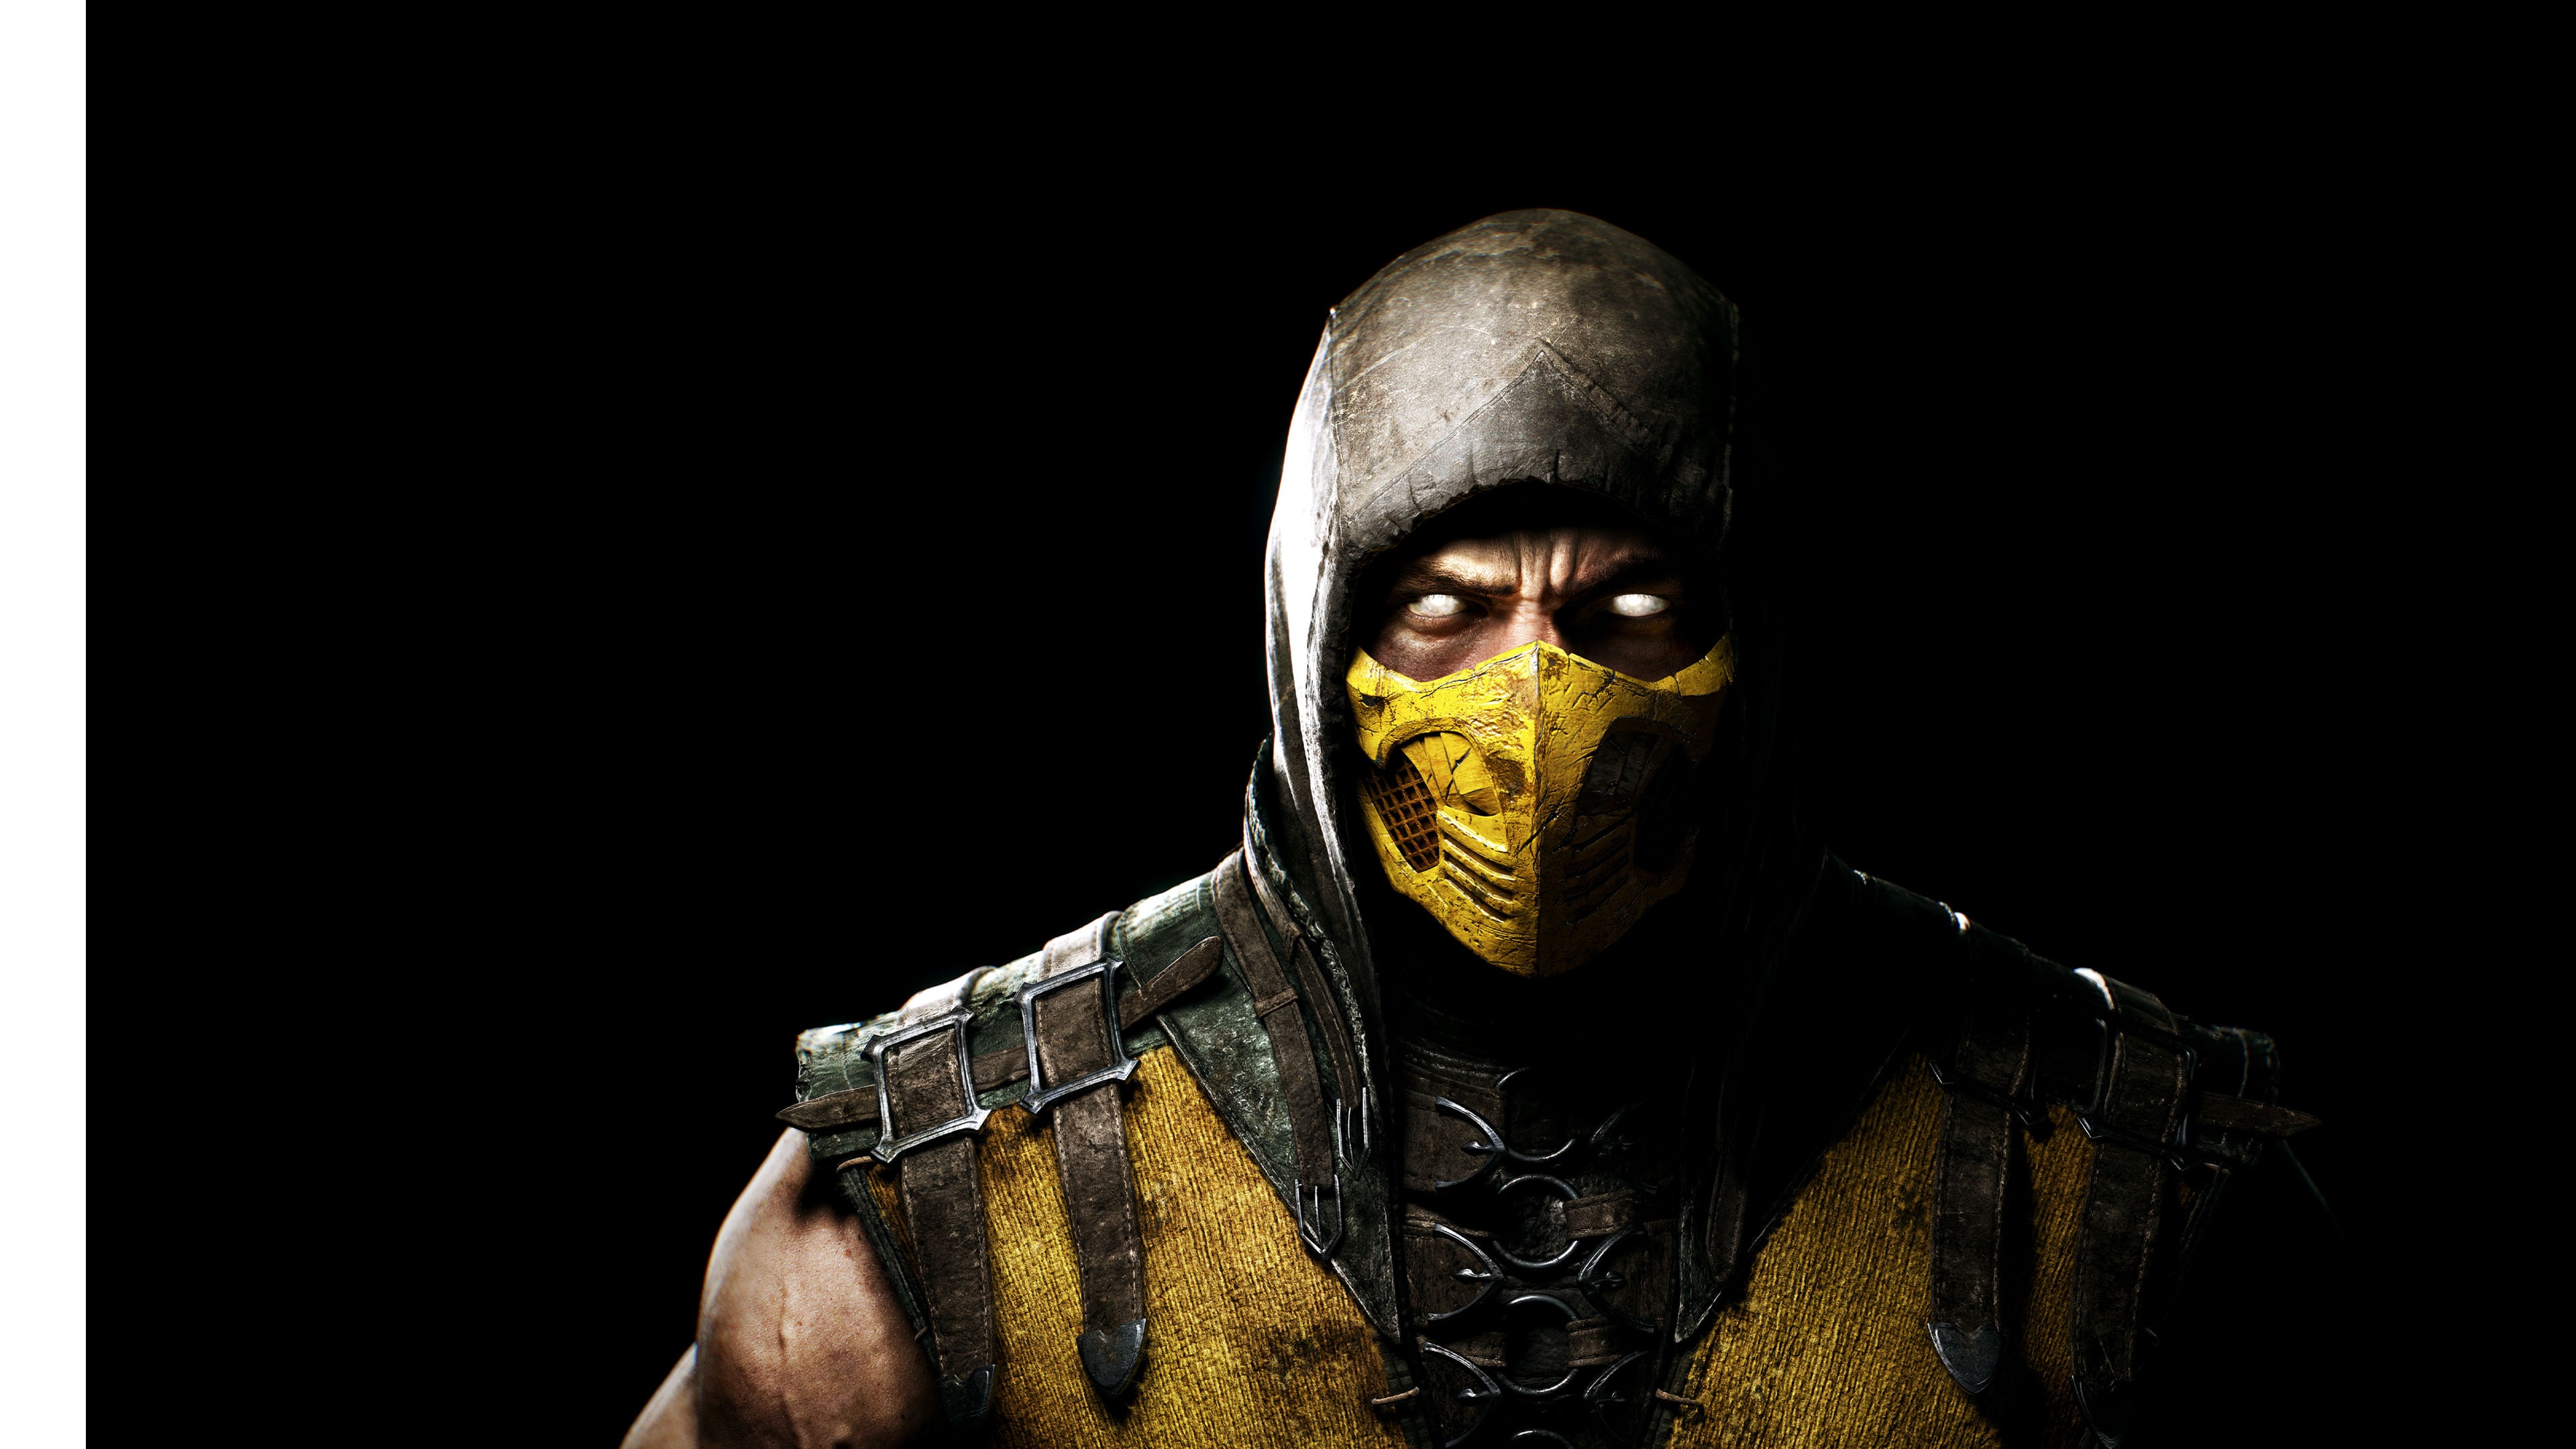 PS4 Mortal Kombat Xl PEGI